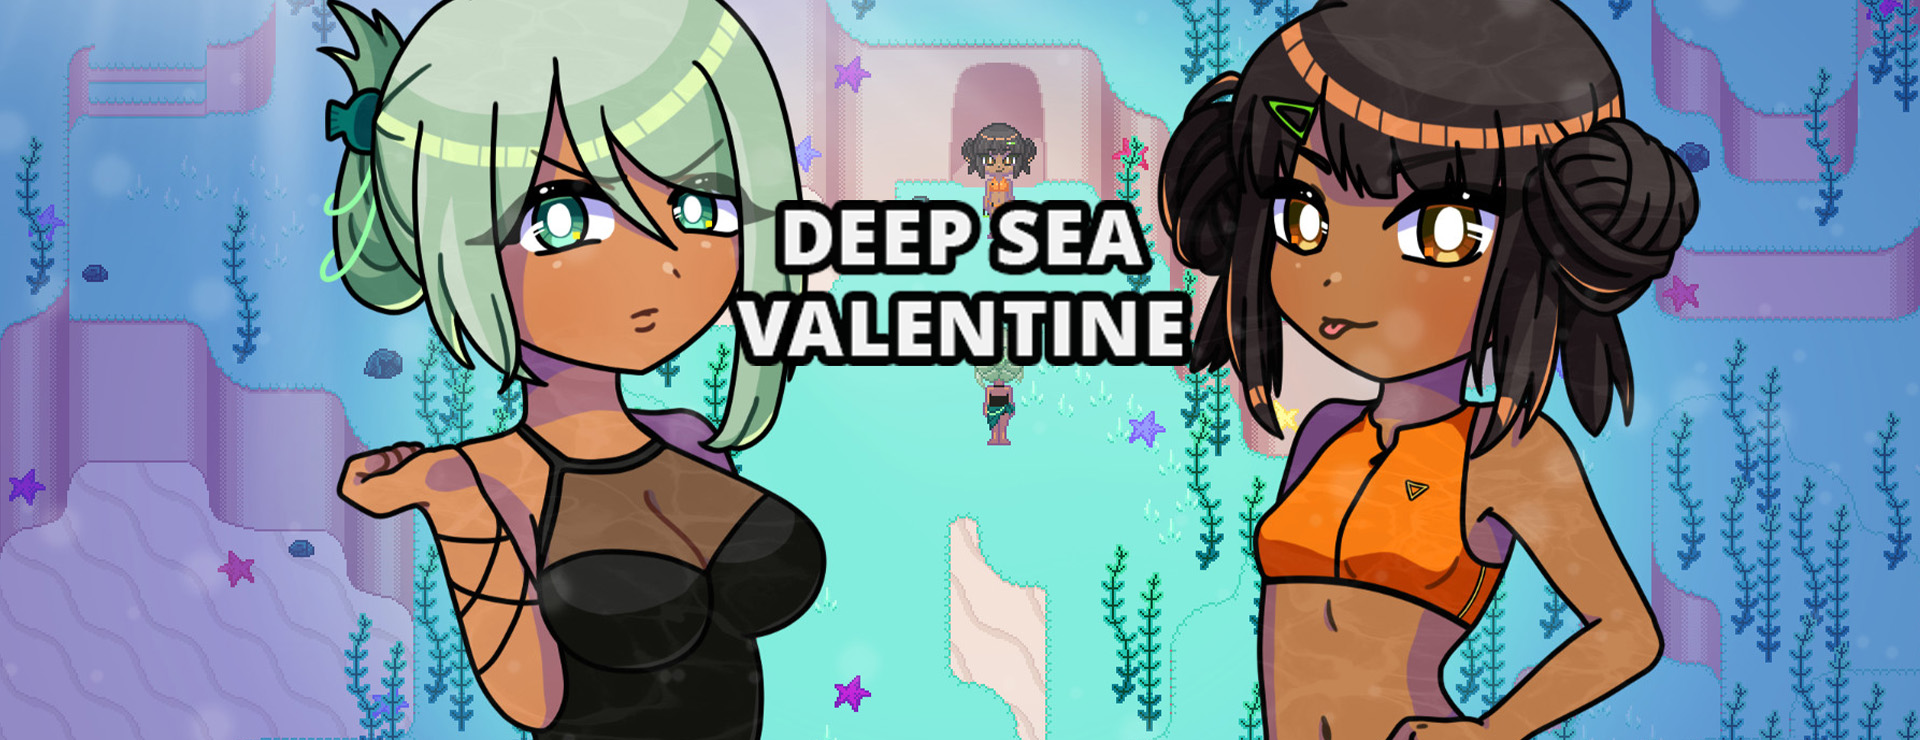 Deep Sea Valentine - Japanisches Adventure Spiel